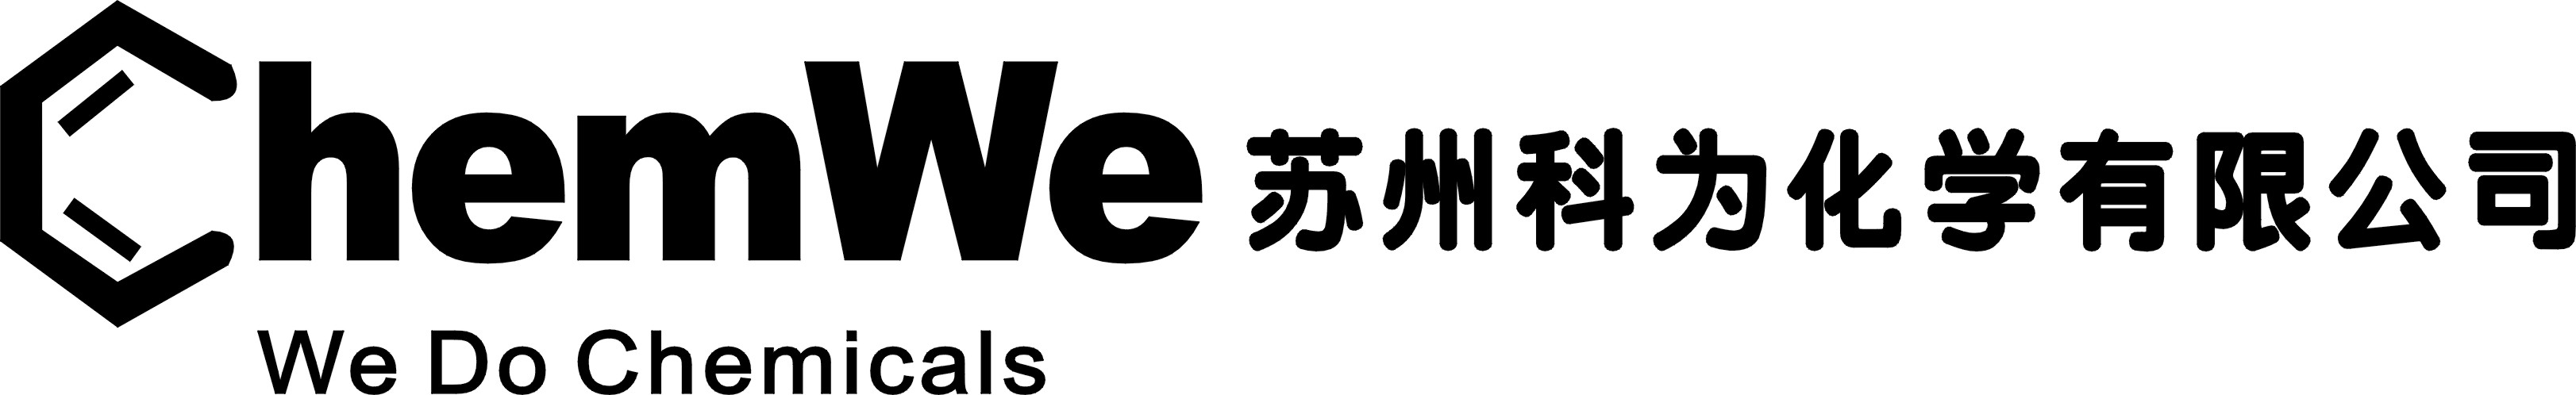 苏州科为化学有限公司logo